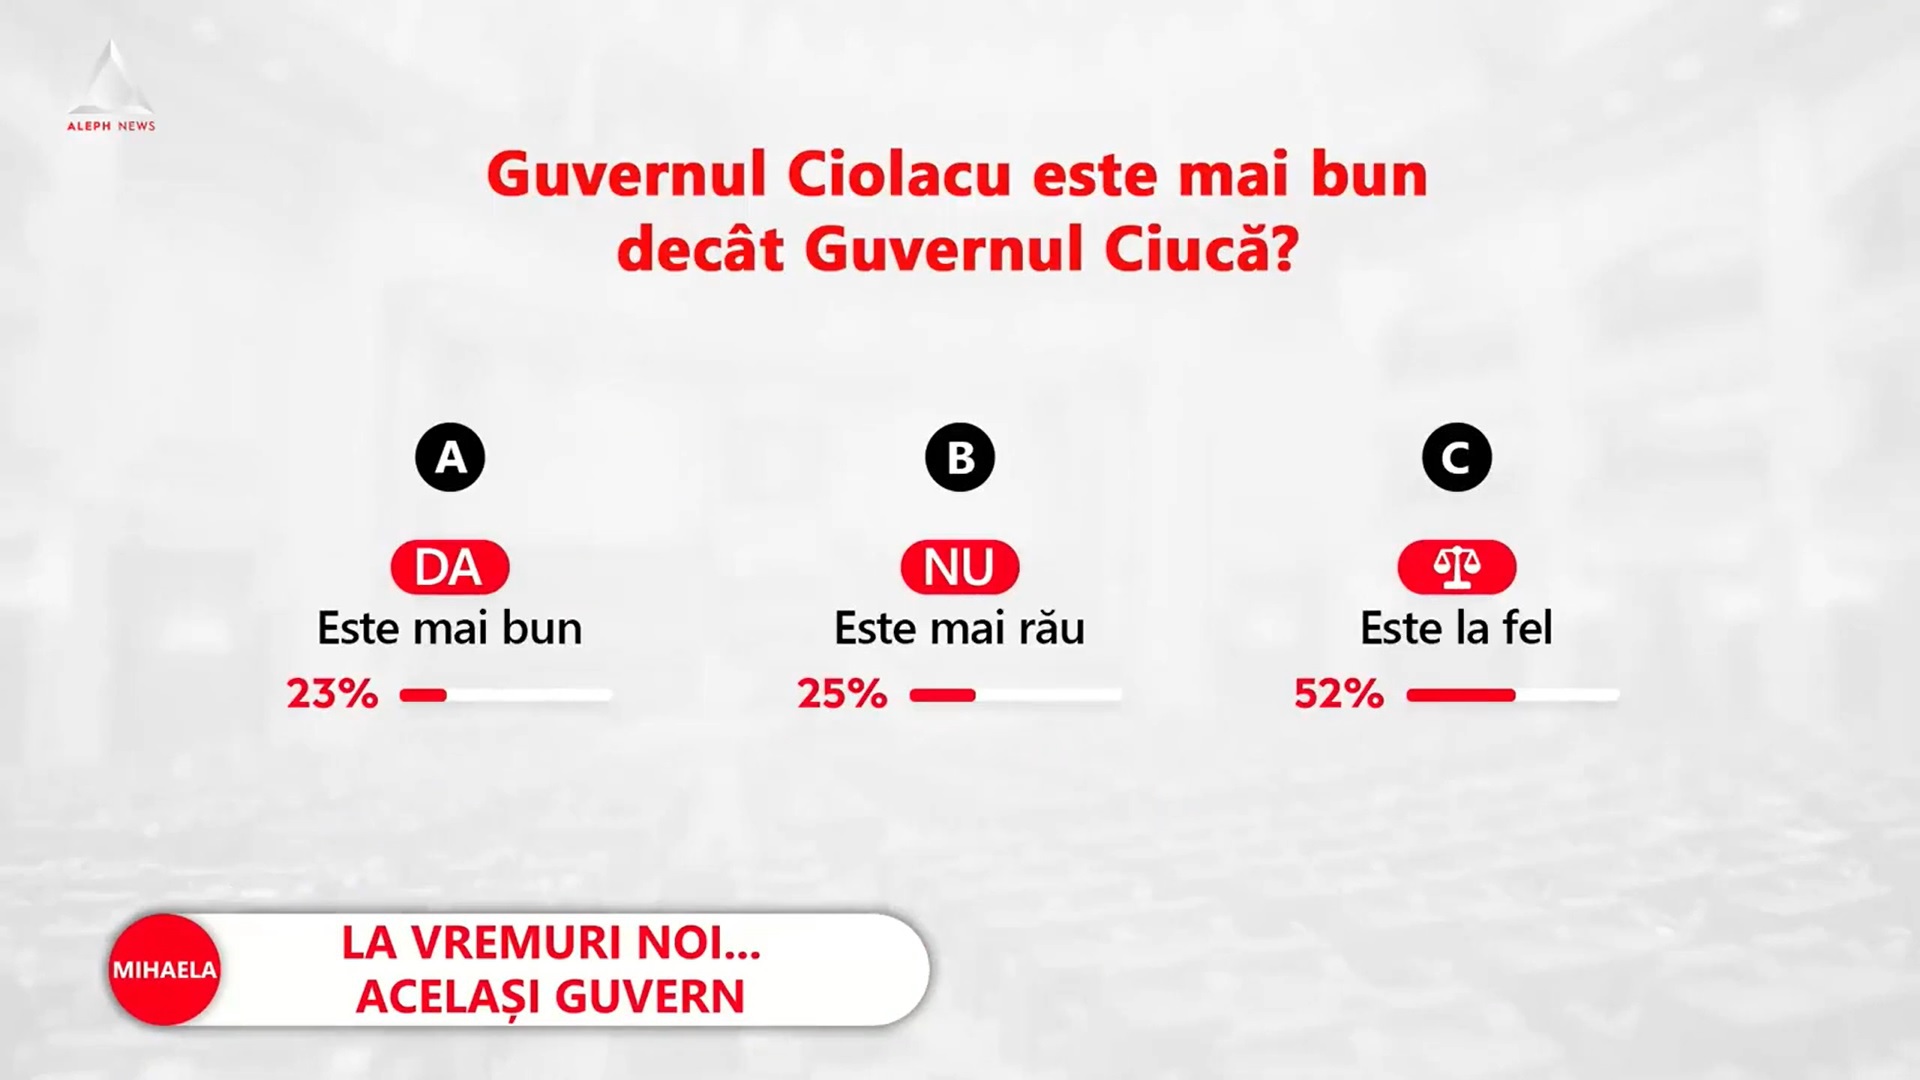 Sondaj Mediafax-ZF.ro-Aleph News: 52% dintre respondenţi spun că Guvernul Ciolacu va fi la fel ca Guvernul Ciucă